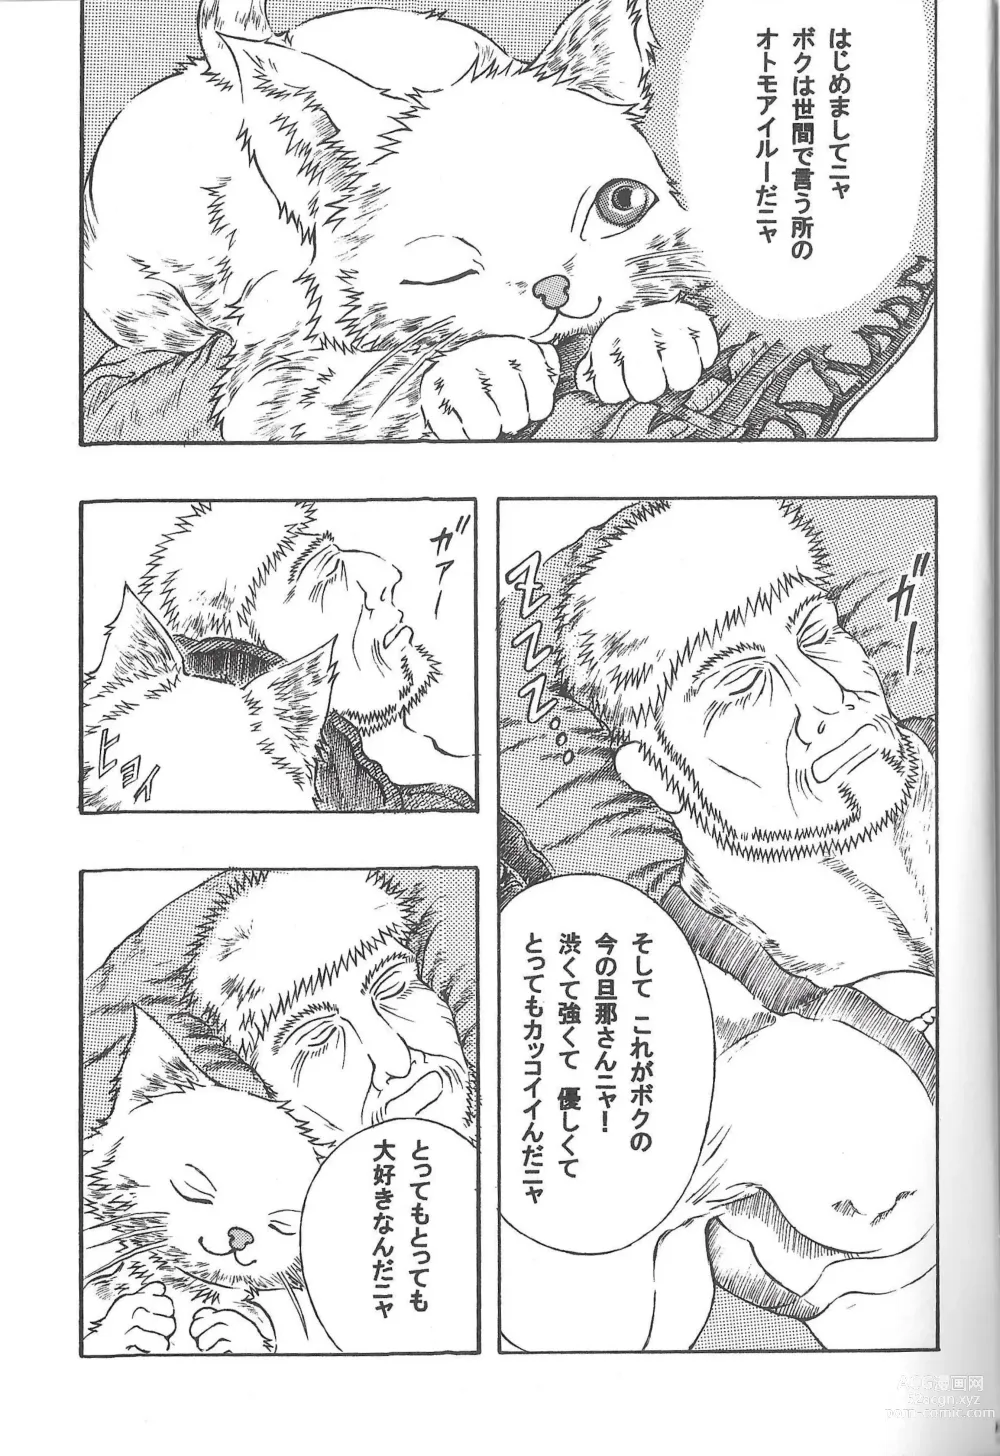 Page 4 of doujinshi Airu Monhun Dream